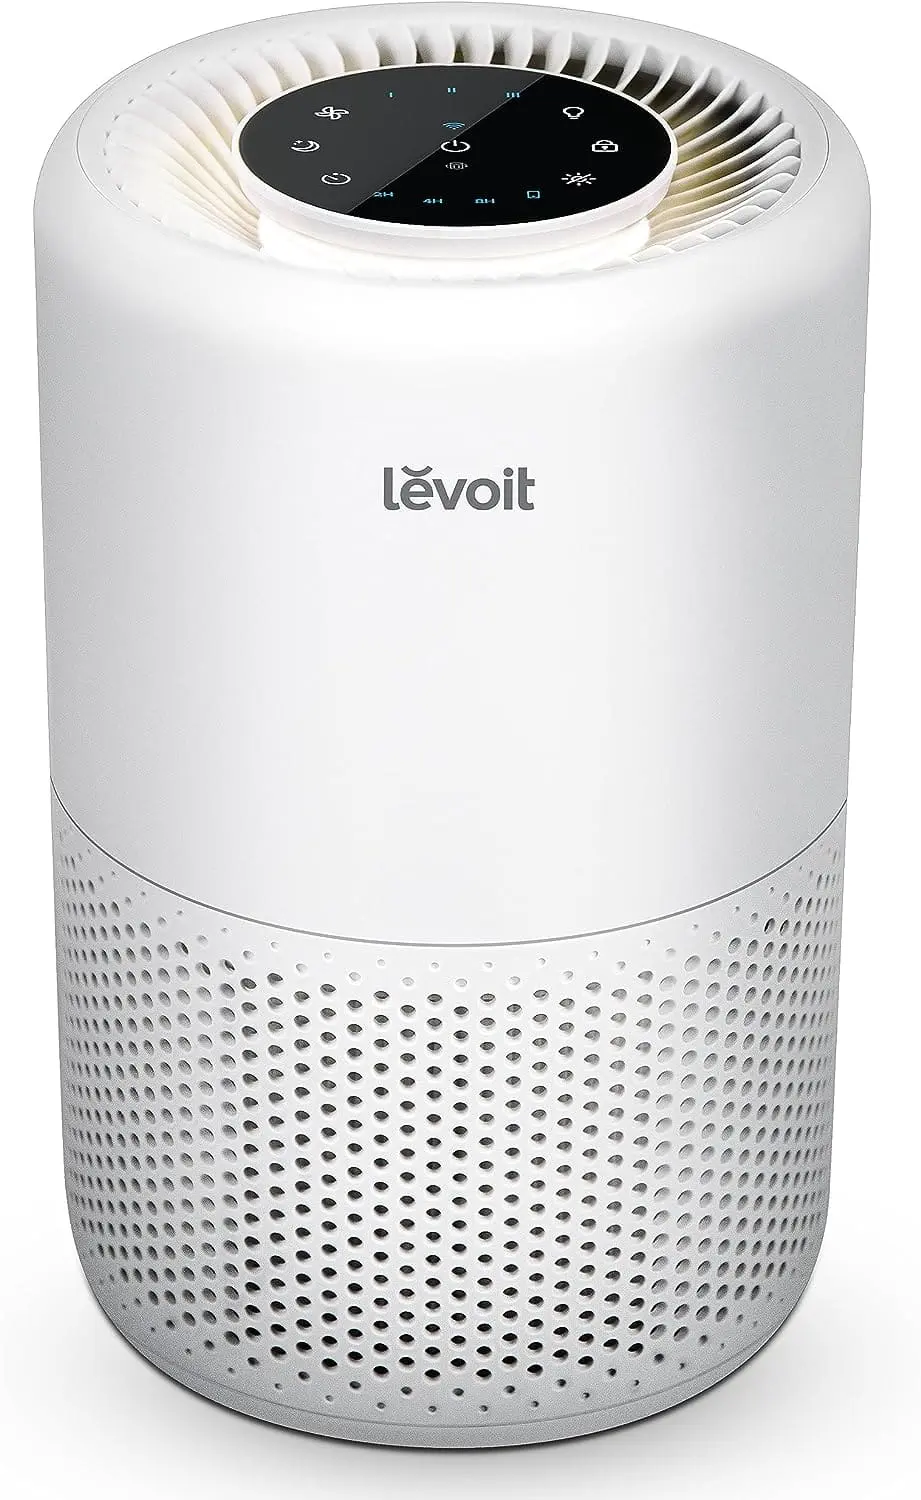 LEVOIT Air Purifier Core 200S Review